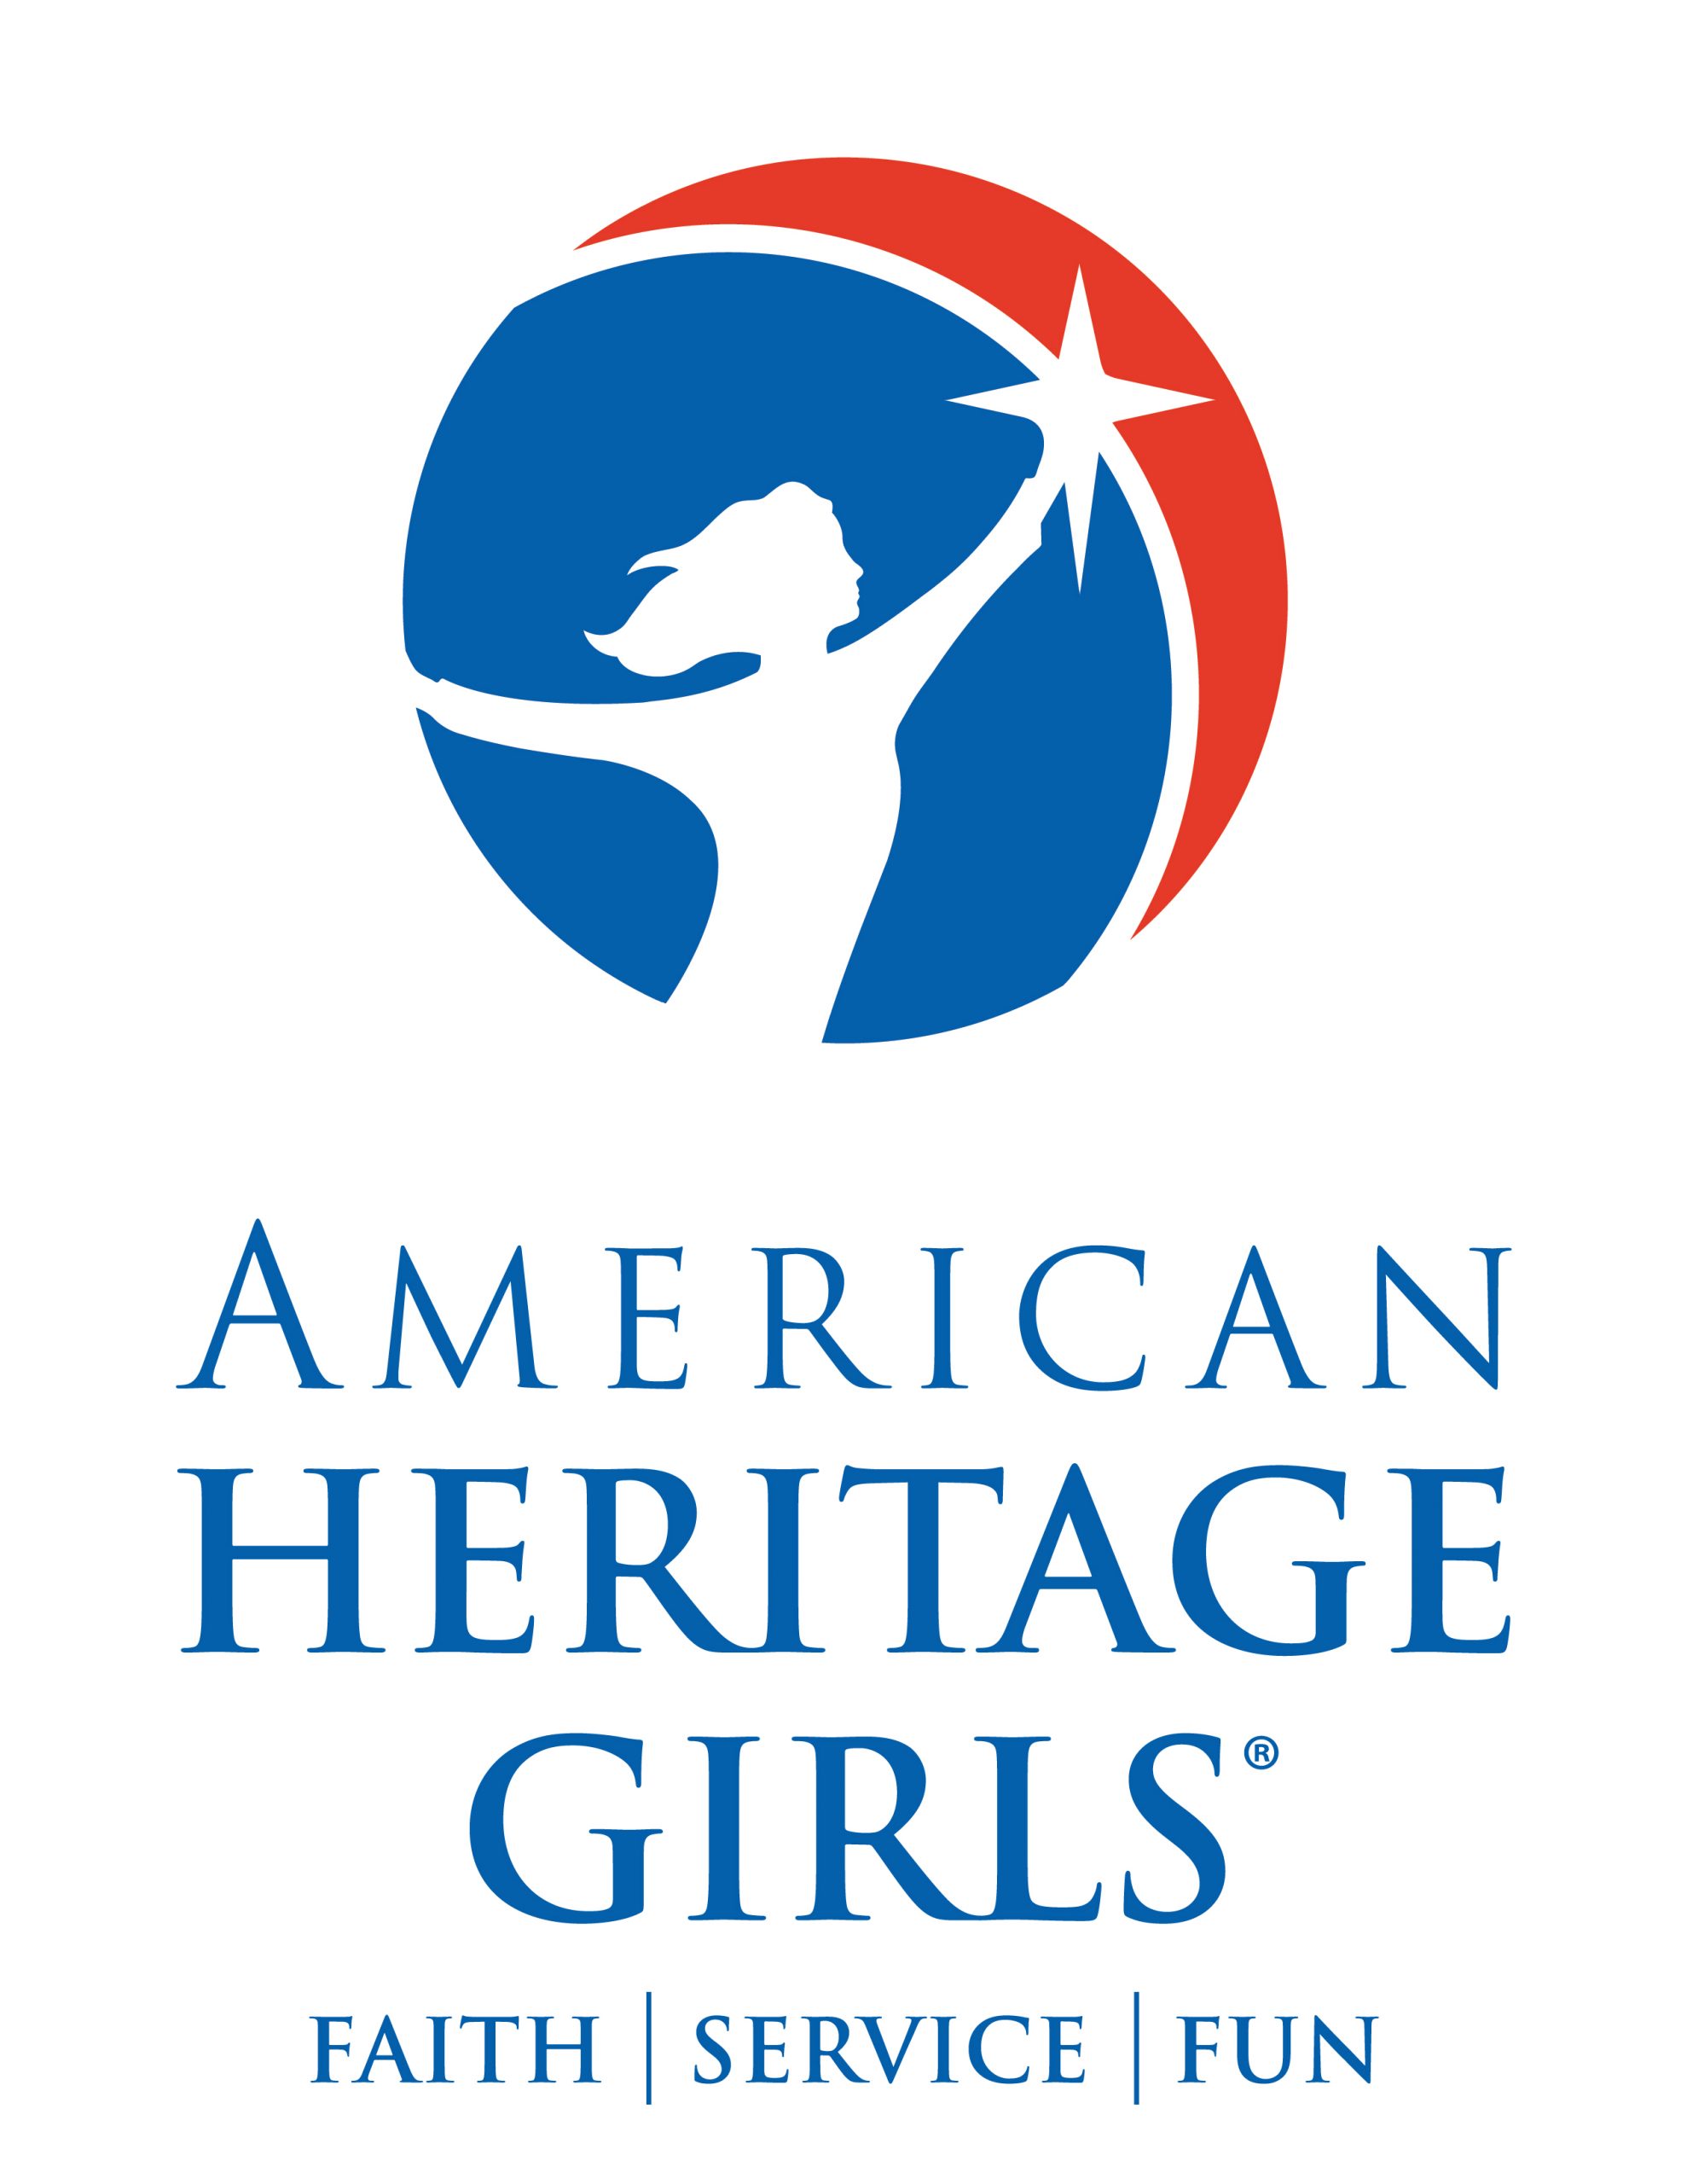 American Heritage Girls logo